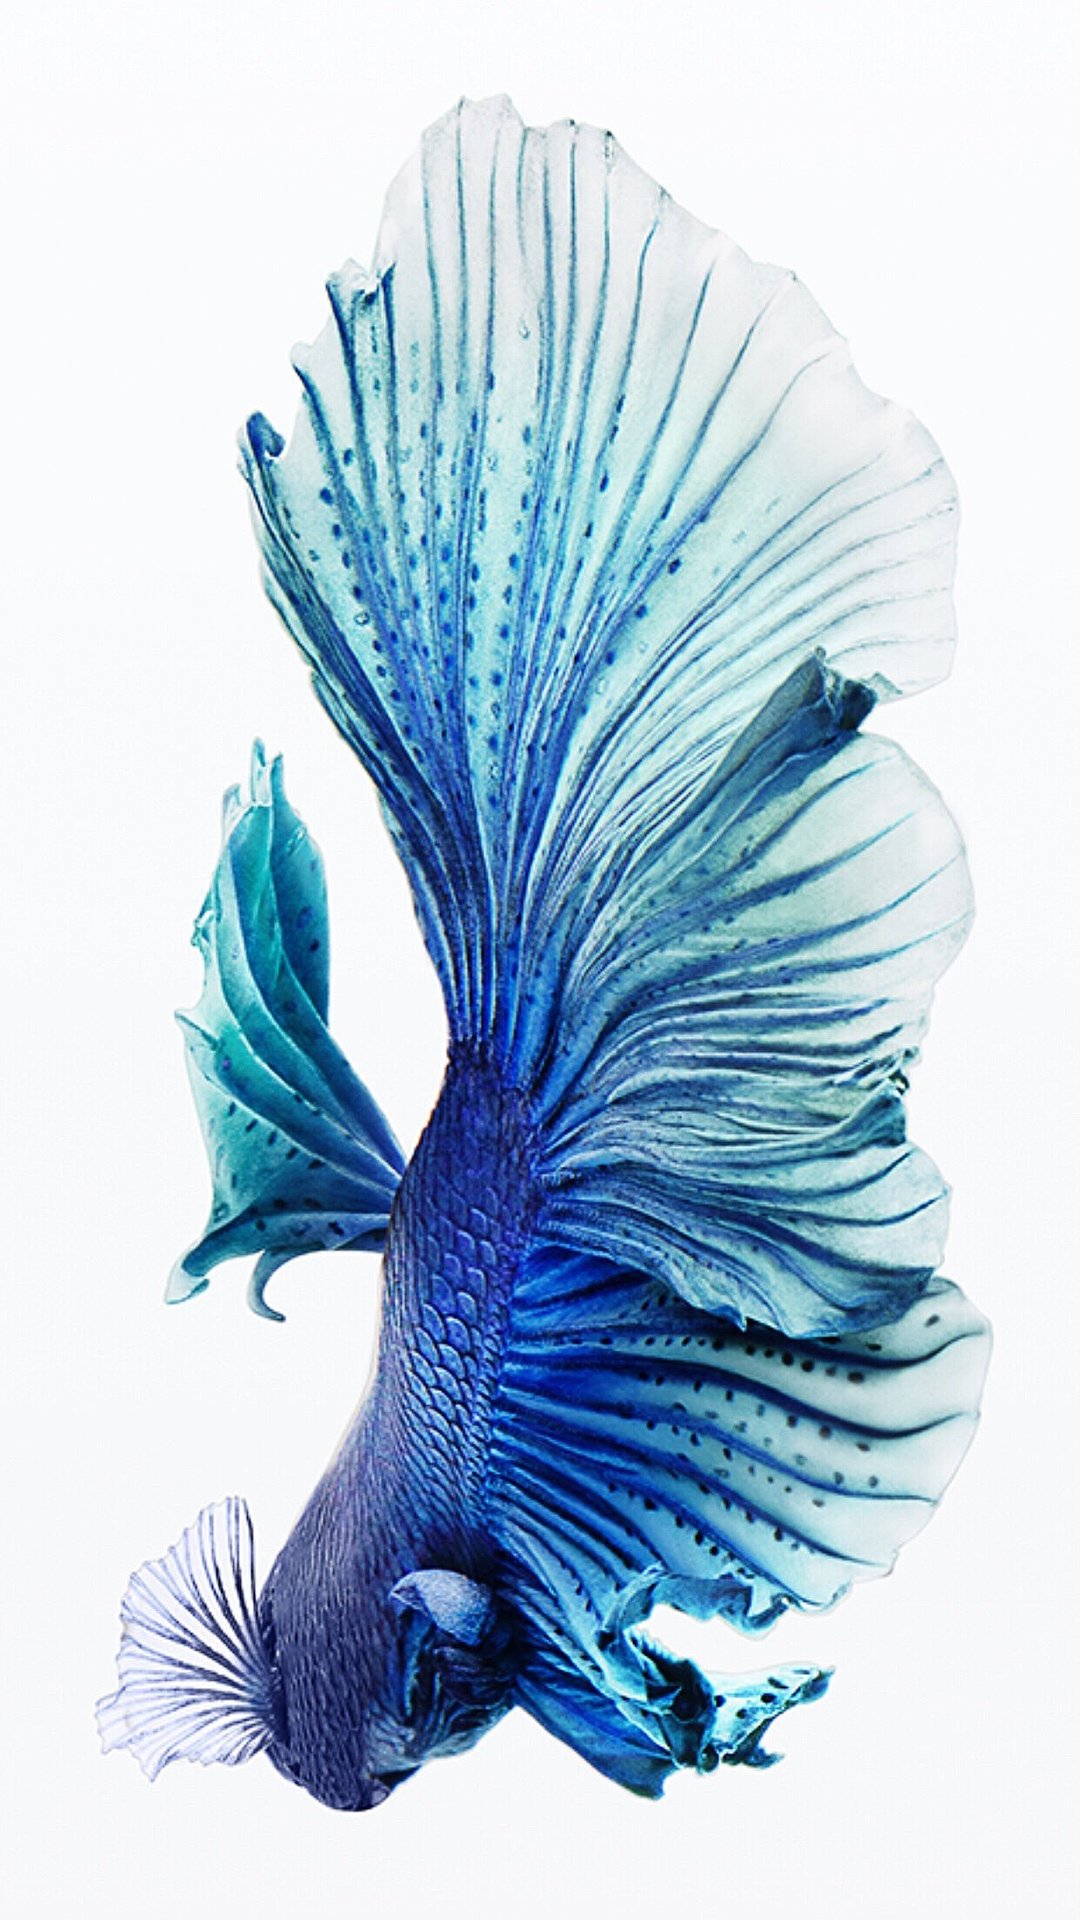 青い熱帯魚 Iphone12 スマホ壁紙 待受画像ギャラリー